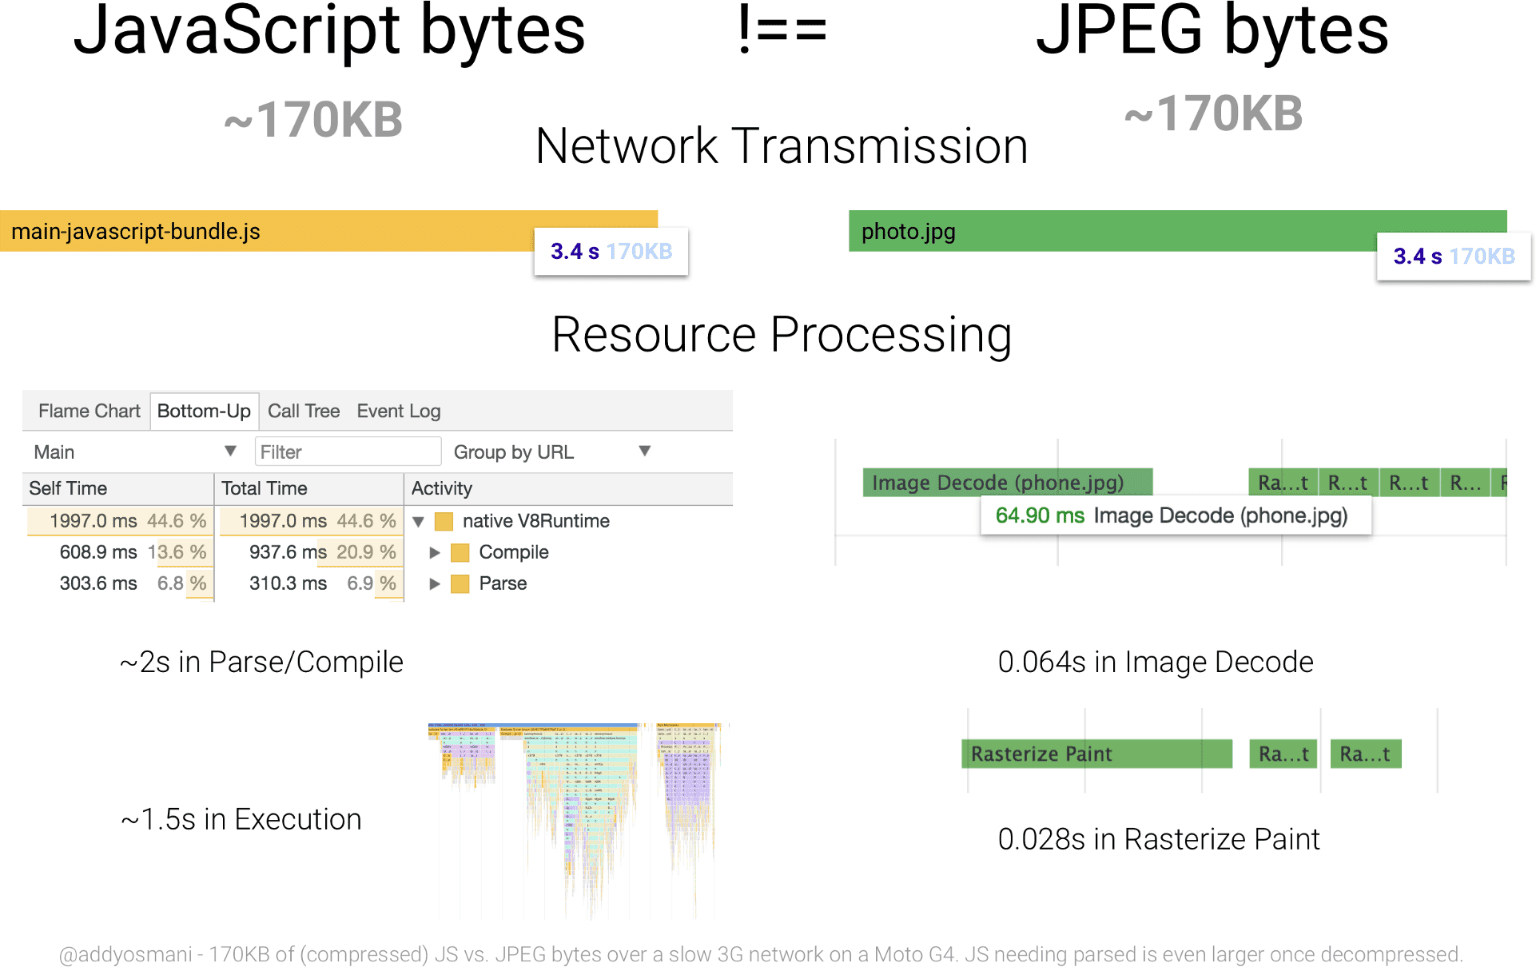 一张图，对比了 170 KB 的 JavaScript 与同等大小的 JPEG 图片的处理时间。与 JPEG 相比，JavaScript 资源的字节数要大得多。